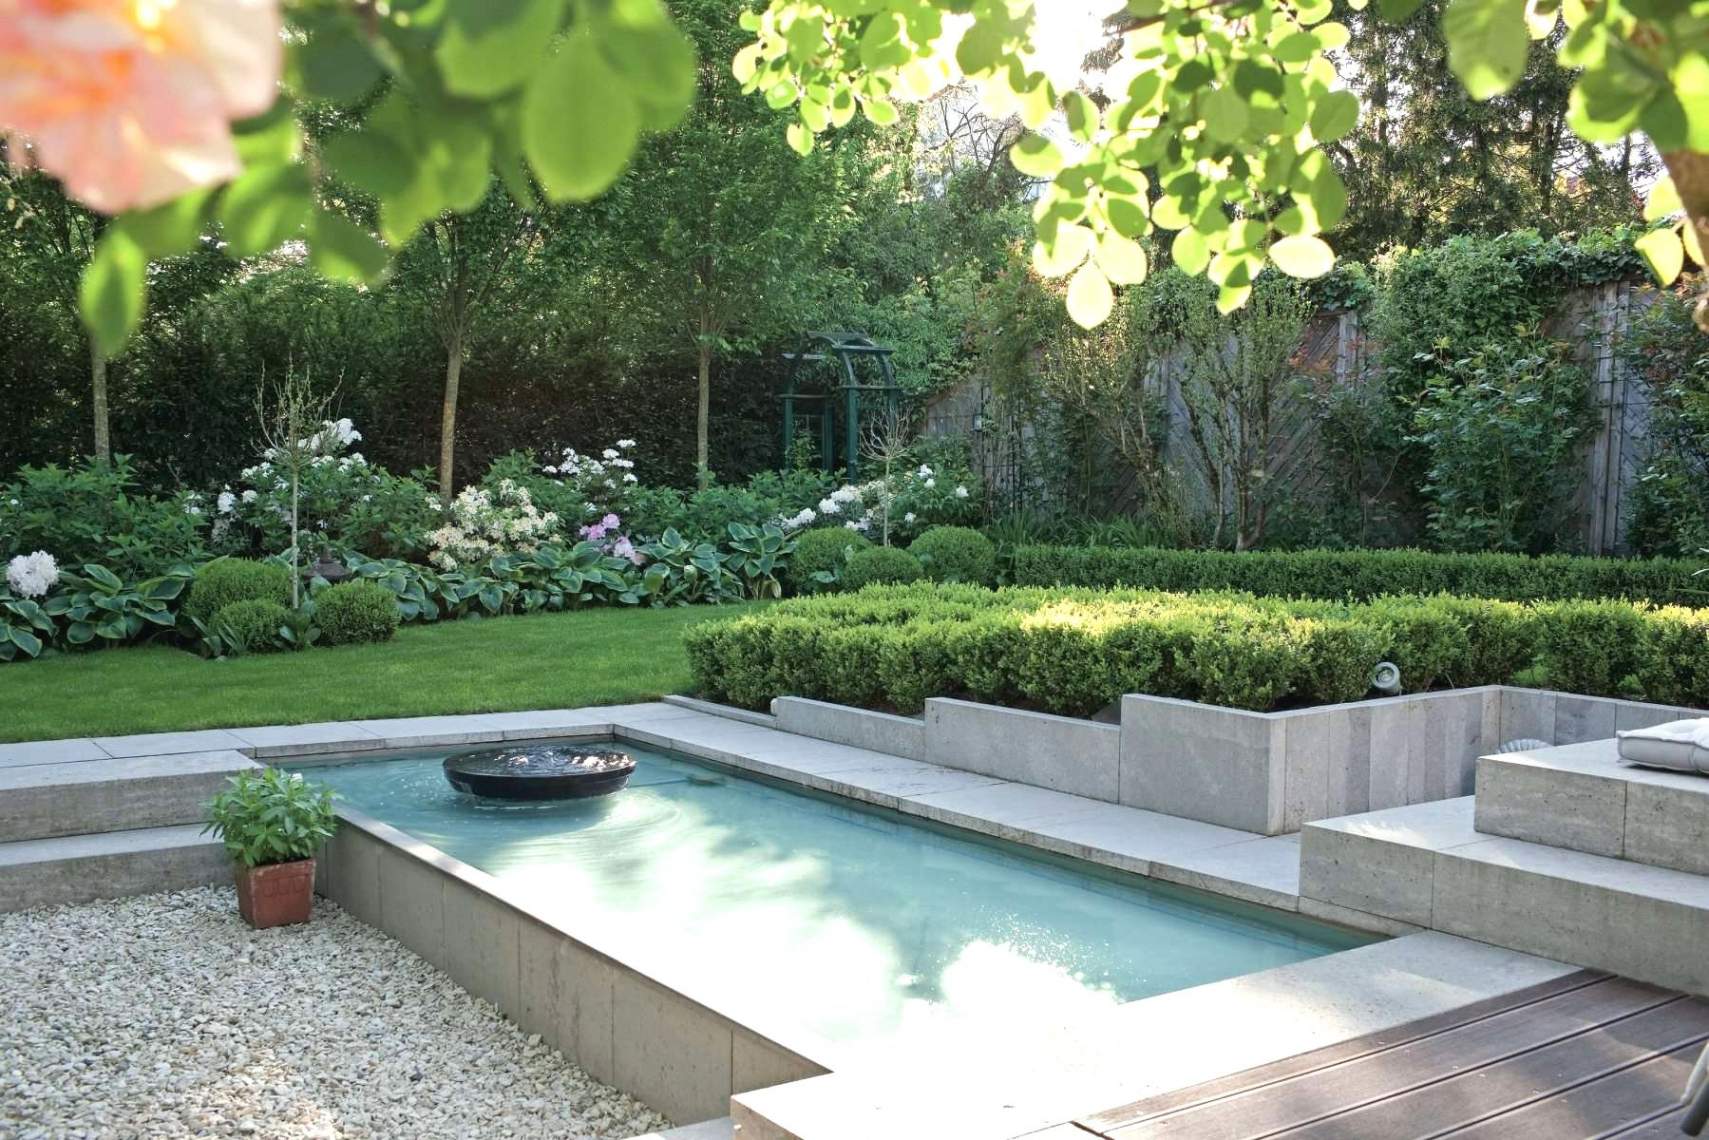 Garten Und Landschaftspflege Best Of 28 Inspirierend Garten Anlegen Ideen Luxus